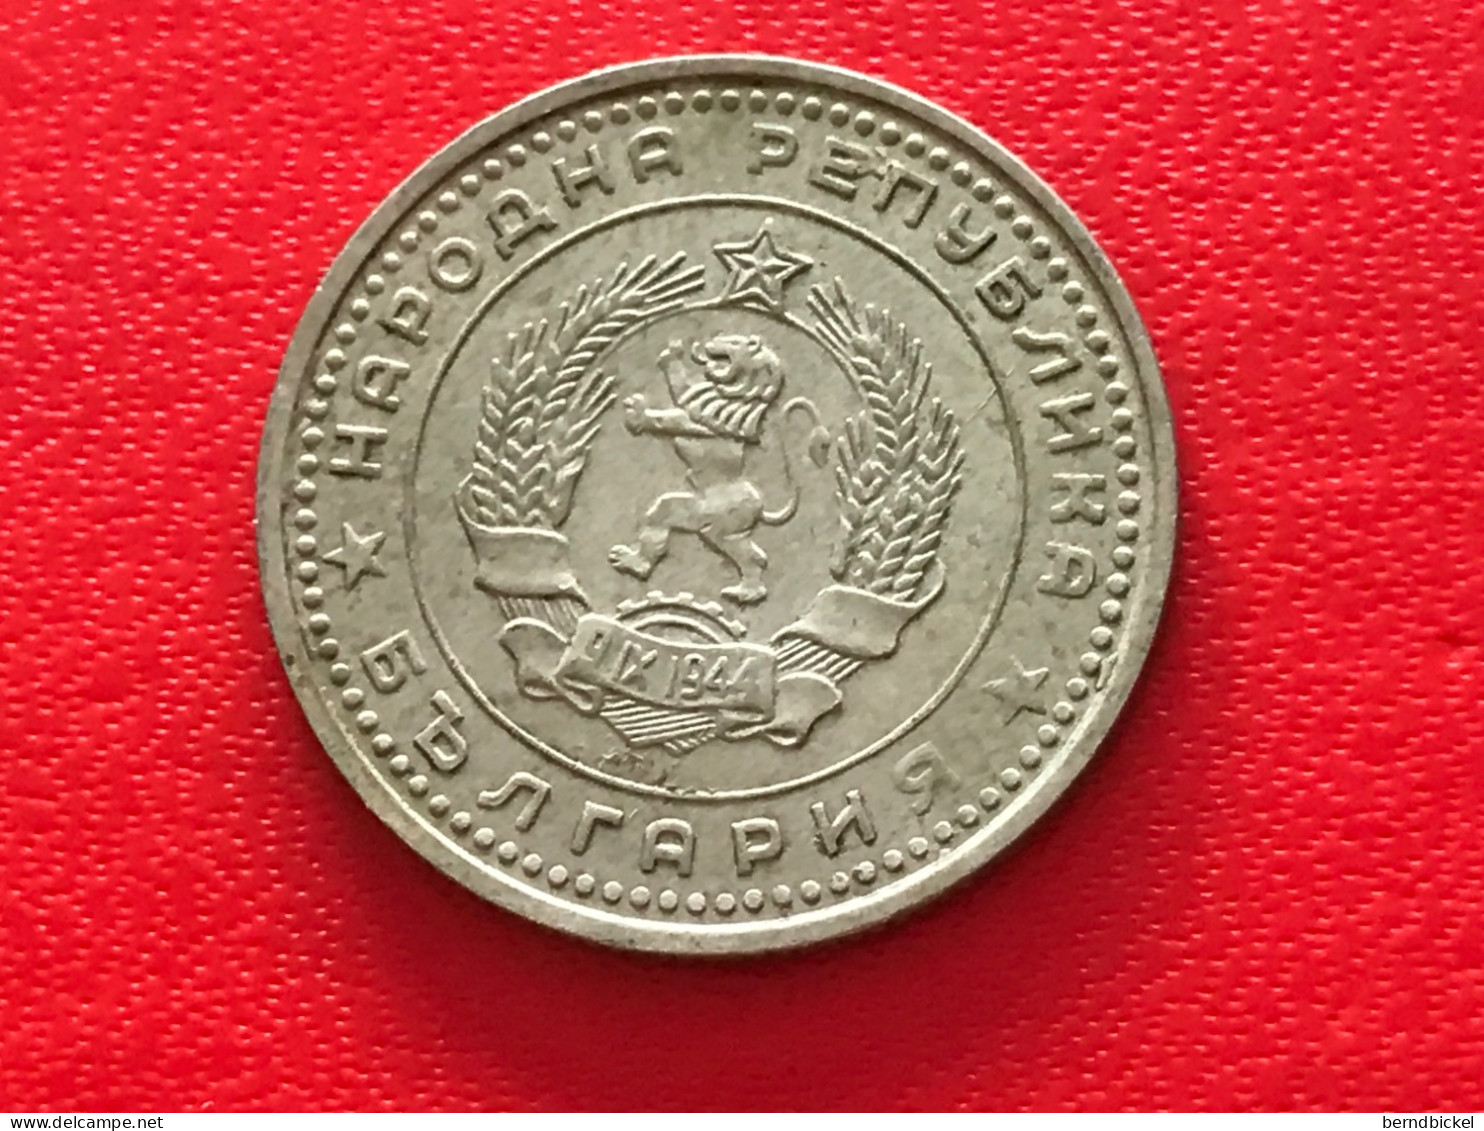 Münze Münzen Umlaufmünze Bulgarien 50 Stotinki 1962 - Bulgarije